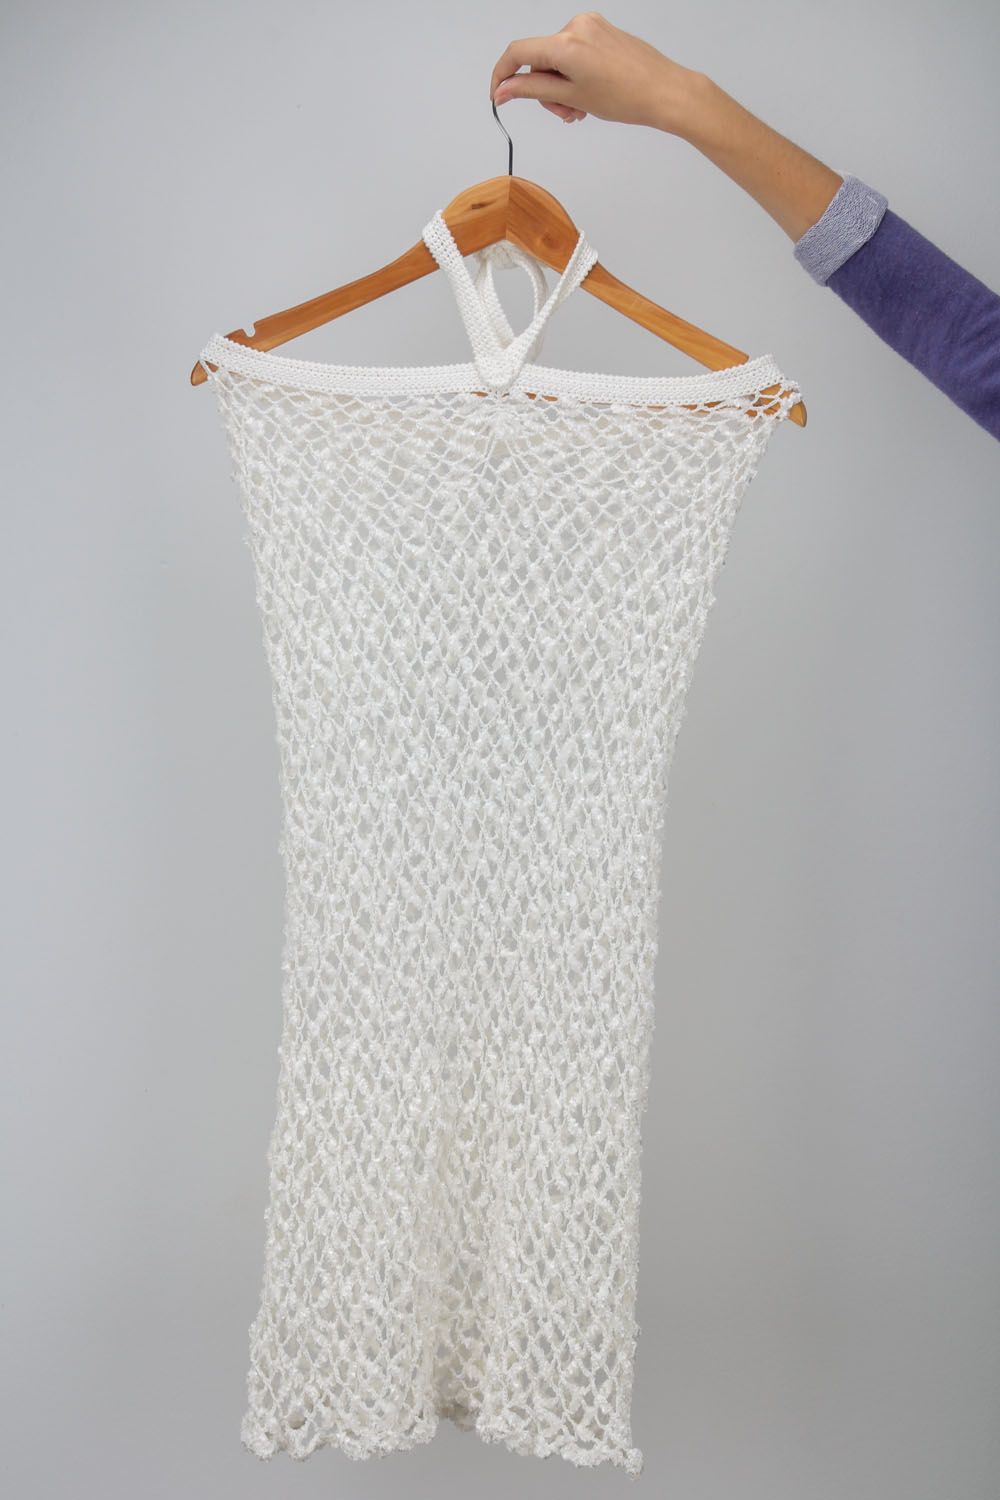 White crochet dress photo 2